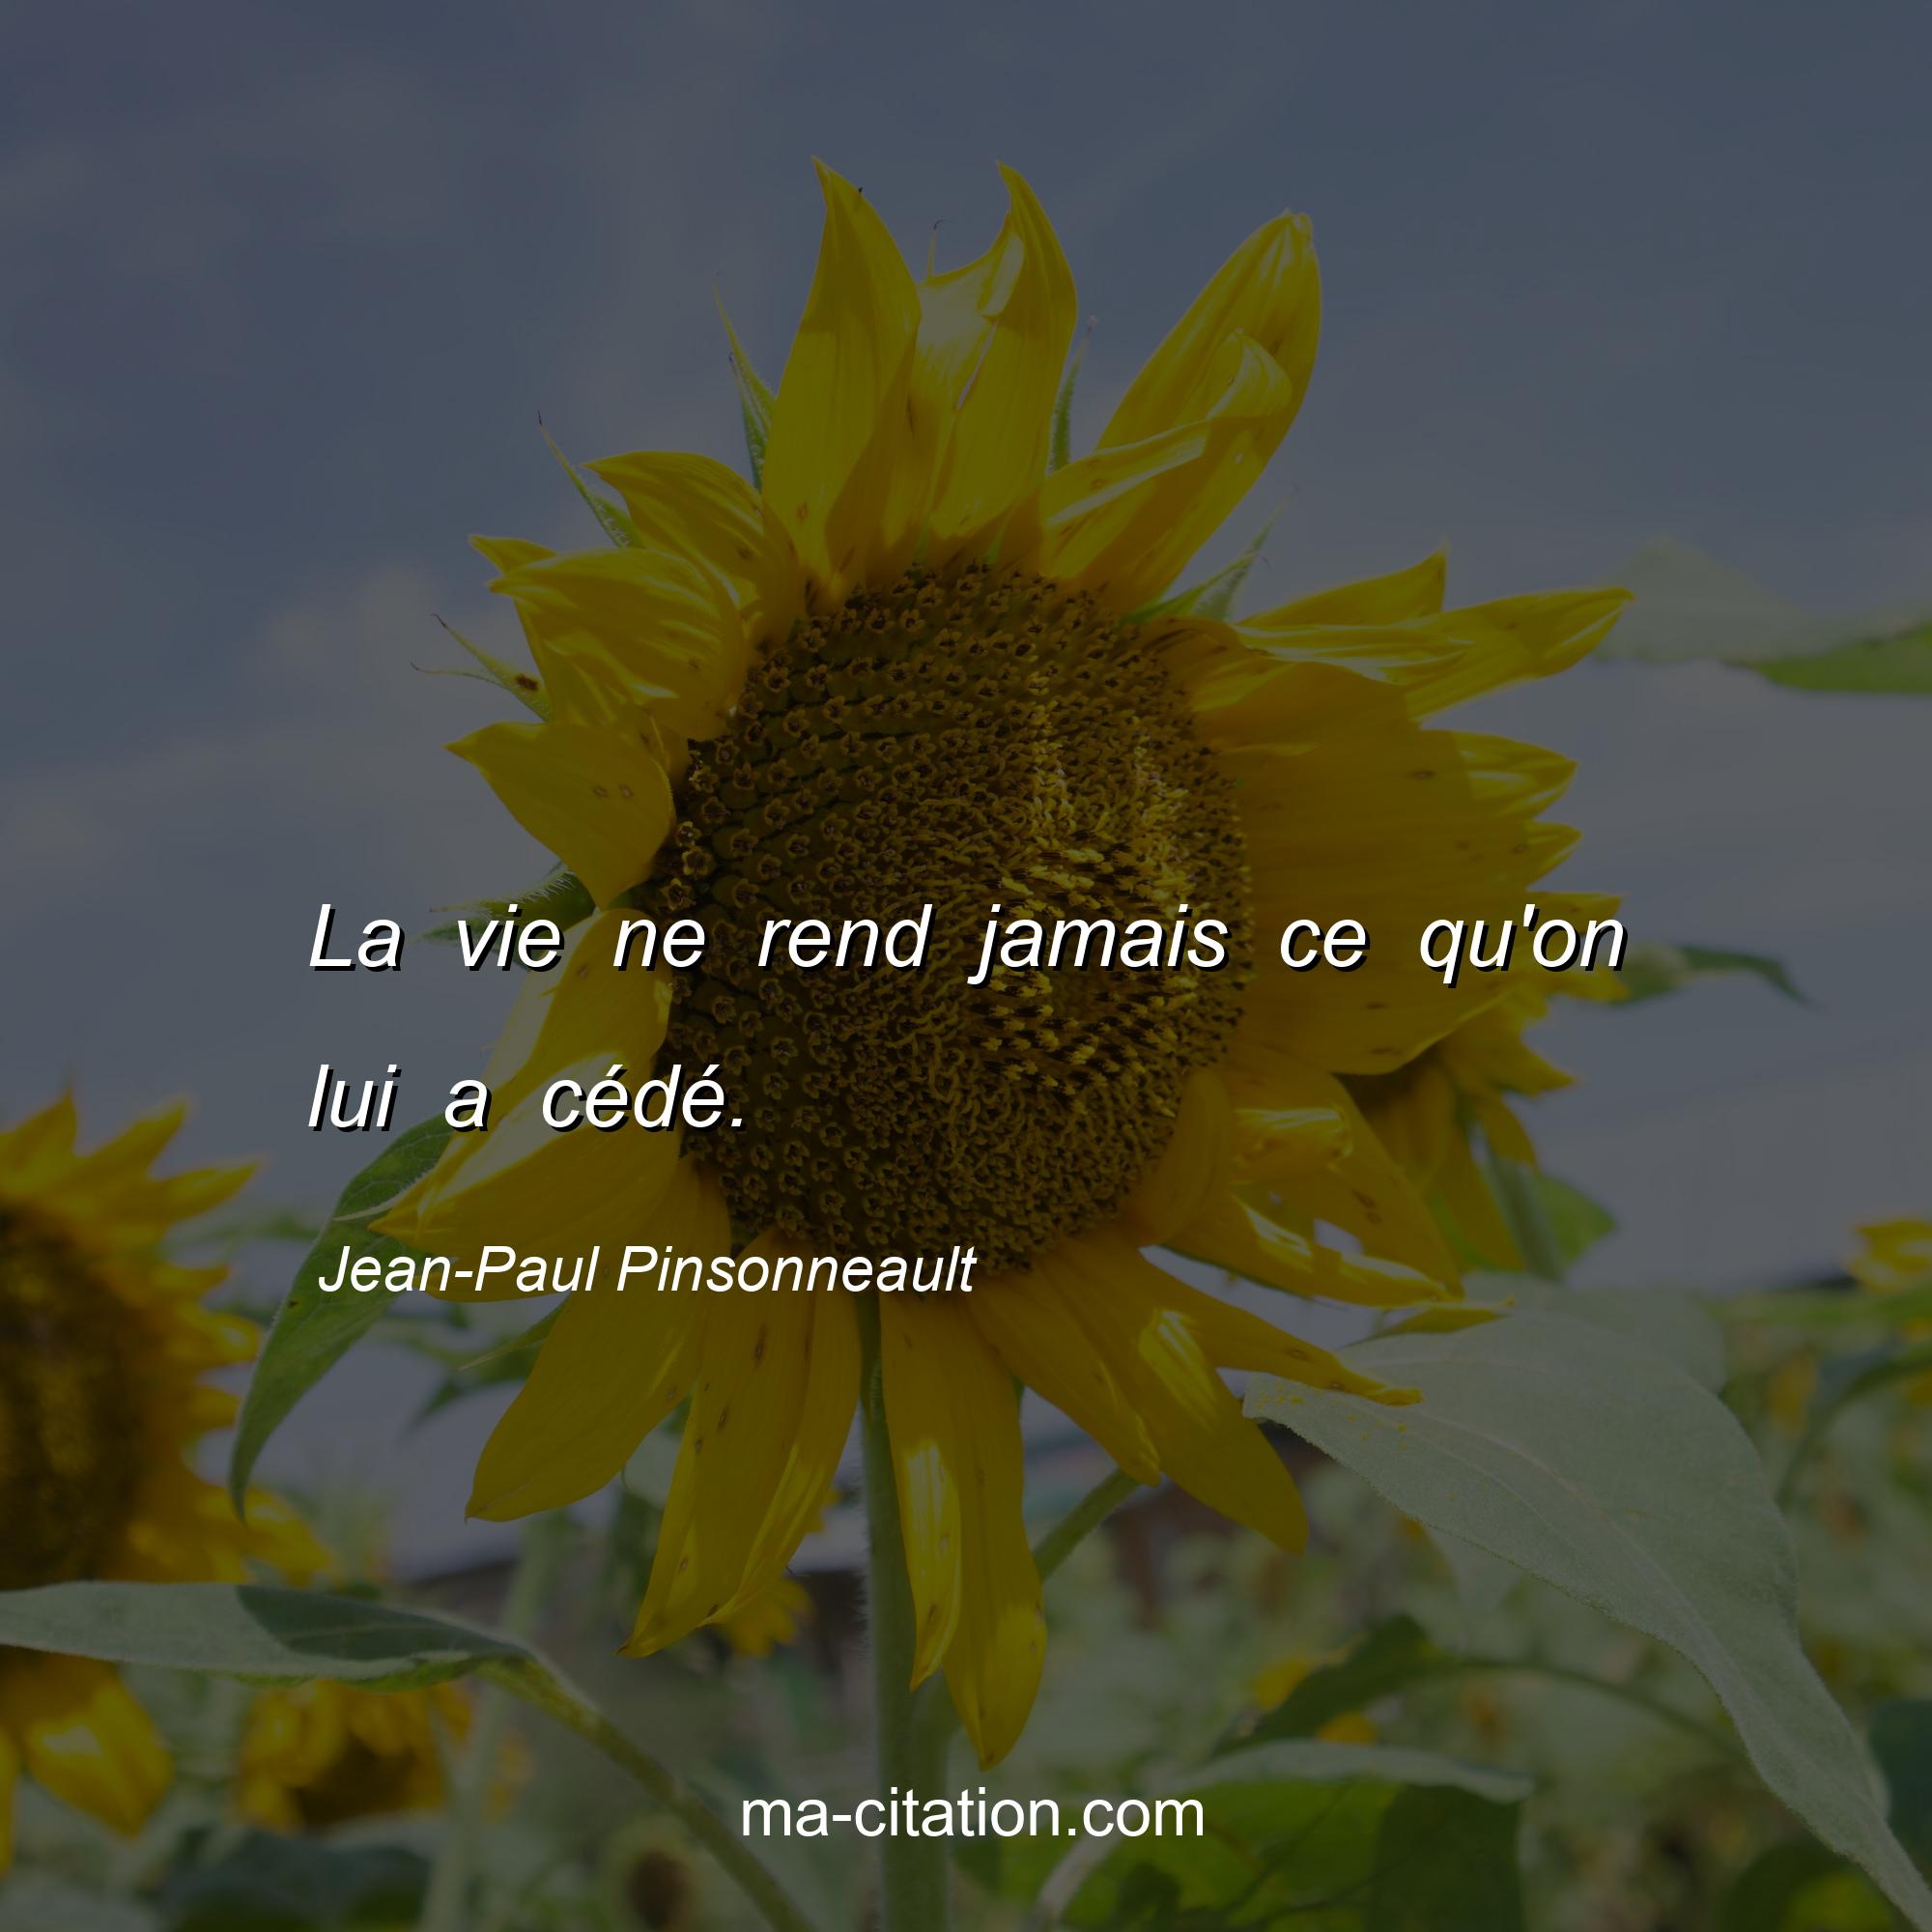 Jean-Paul Pinsonneault : La vie ne rend jamais ce qu'on lui a cédé.